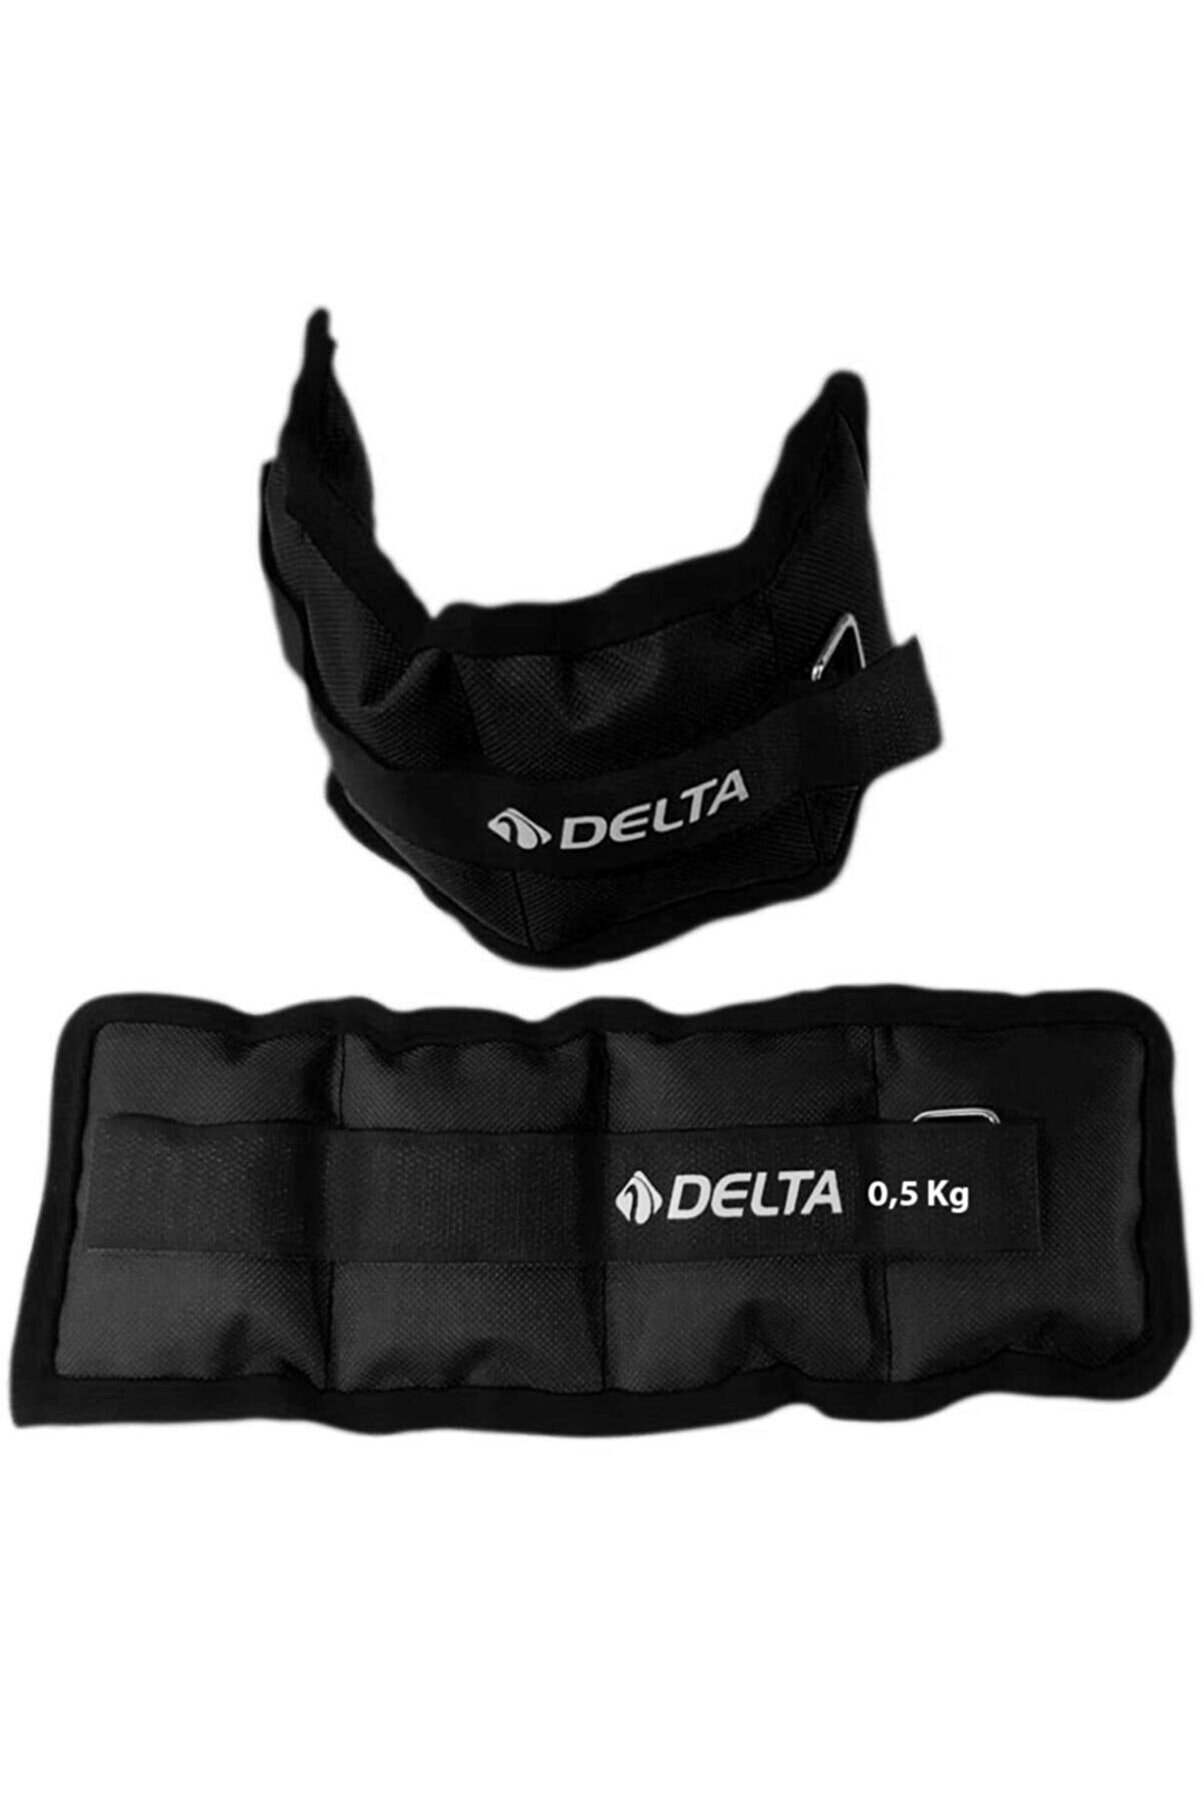 Delta 0,5 Kg X 2 Adet El Ayak Bilek Kas Güçlendirici Ağırlık Seti